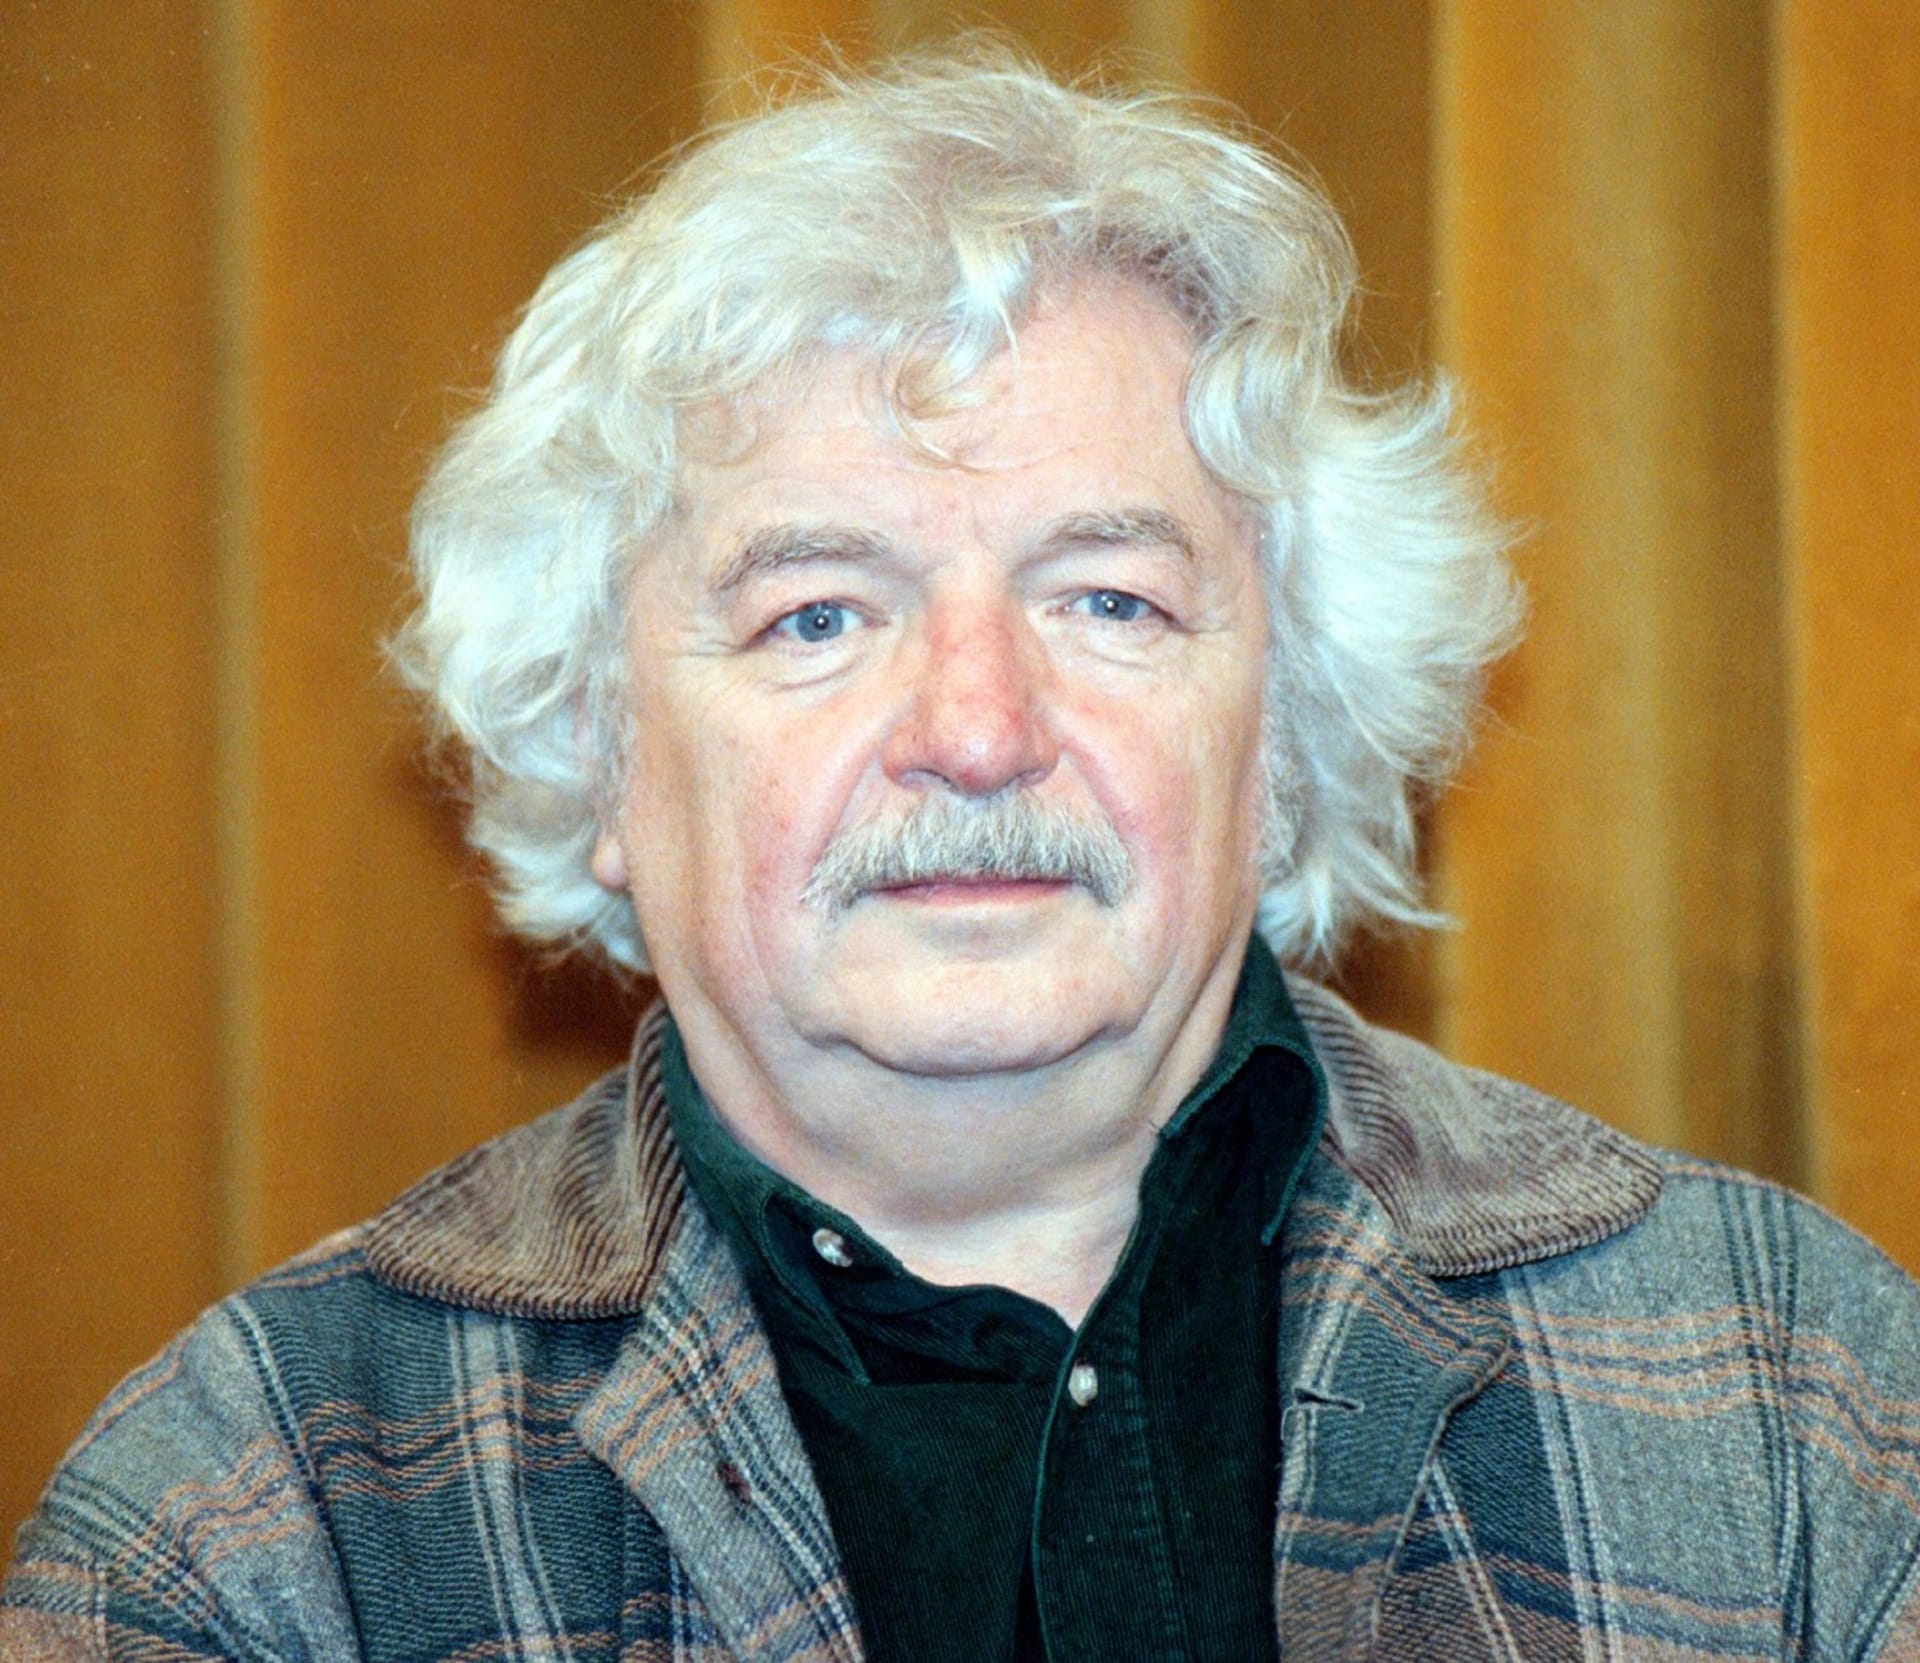 Ladislav Smoljak se dožil 78 let. Zemřel na rakovinu 6. června 2010.